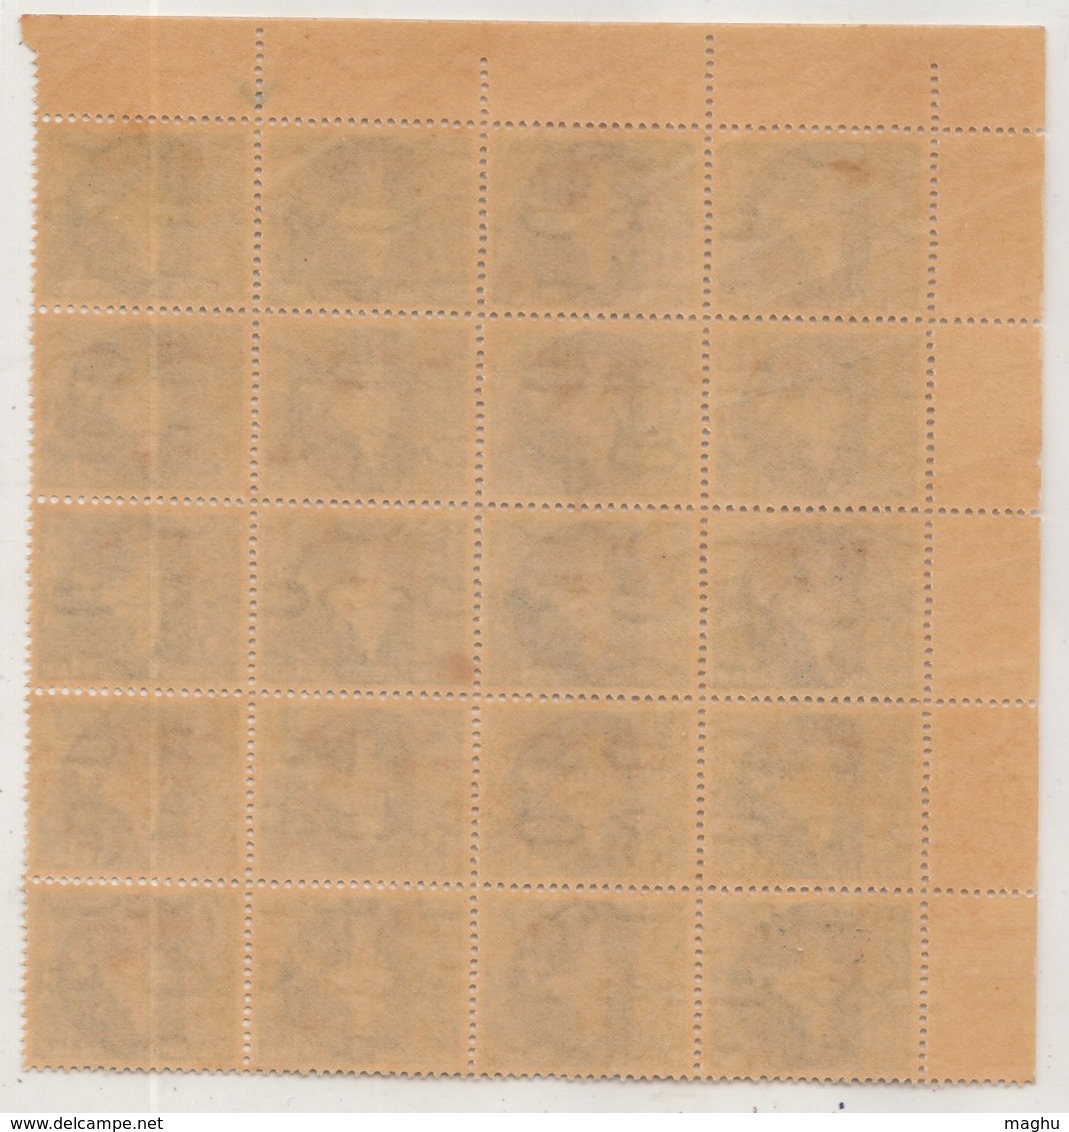 Block Of 20, 1np, Oveperprint Of 'Vietnam' On Map Series, Watermark Ashokan, India MNH 1963 - Militaire Vrijstelling Van Portkosten